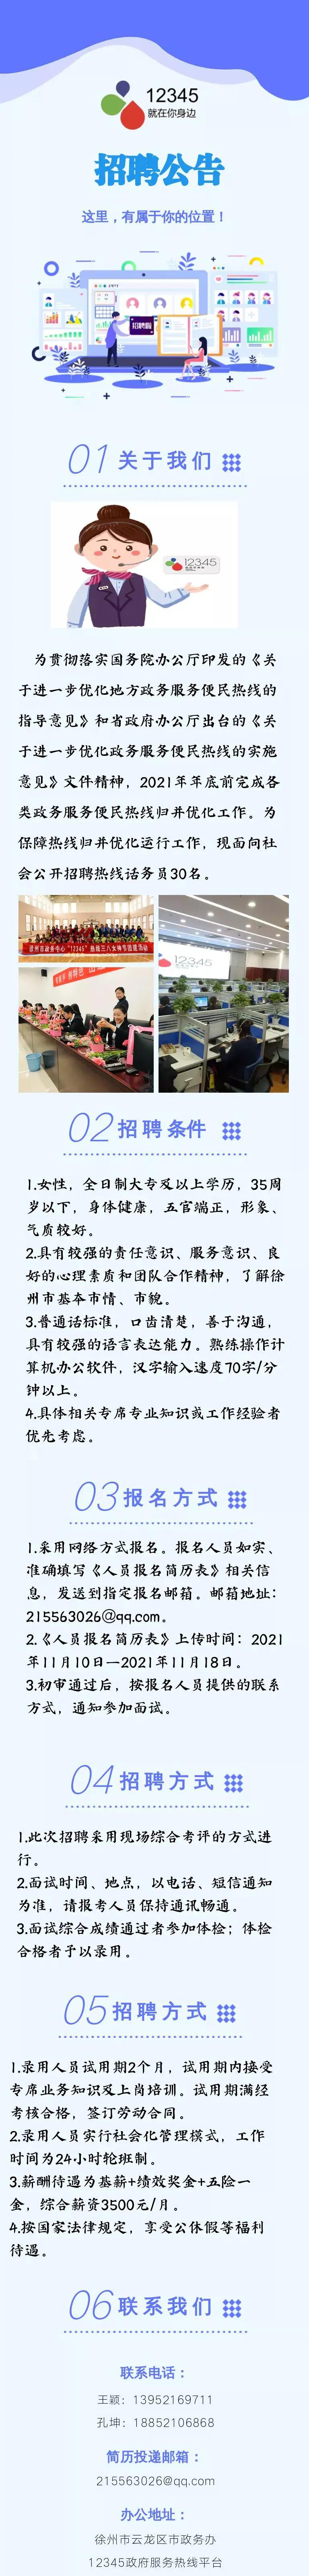 徐州市12345政府服务热线招聘话务员30人